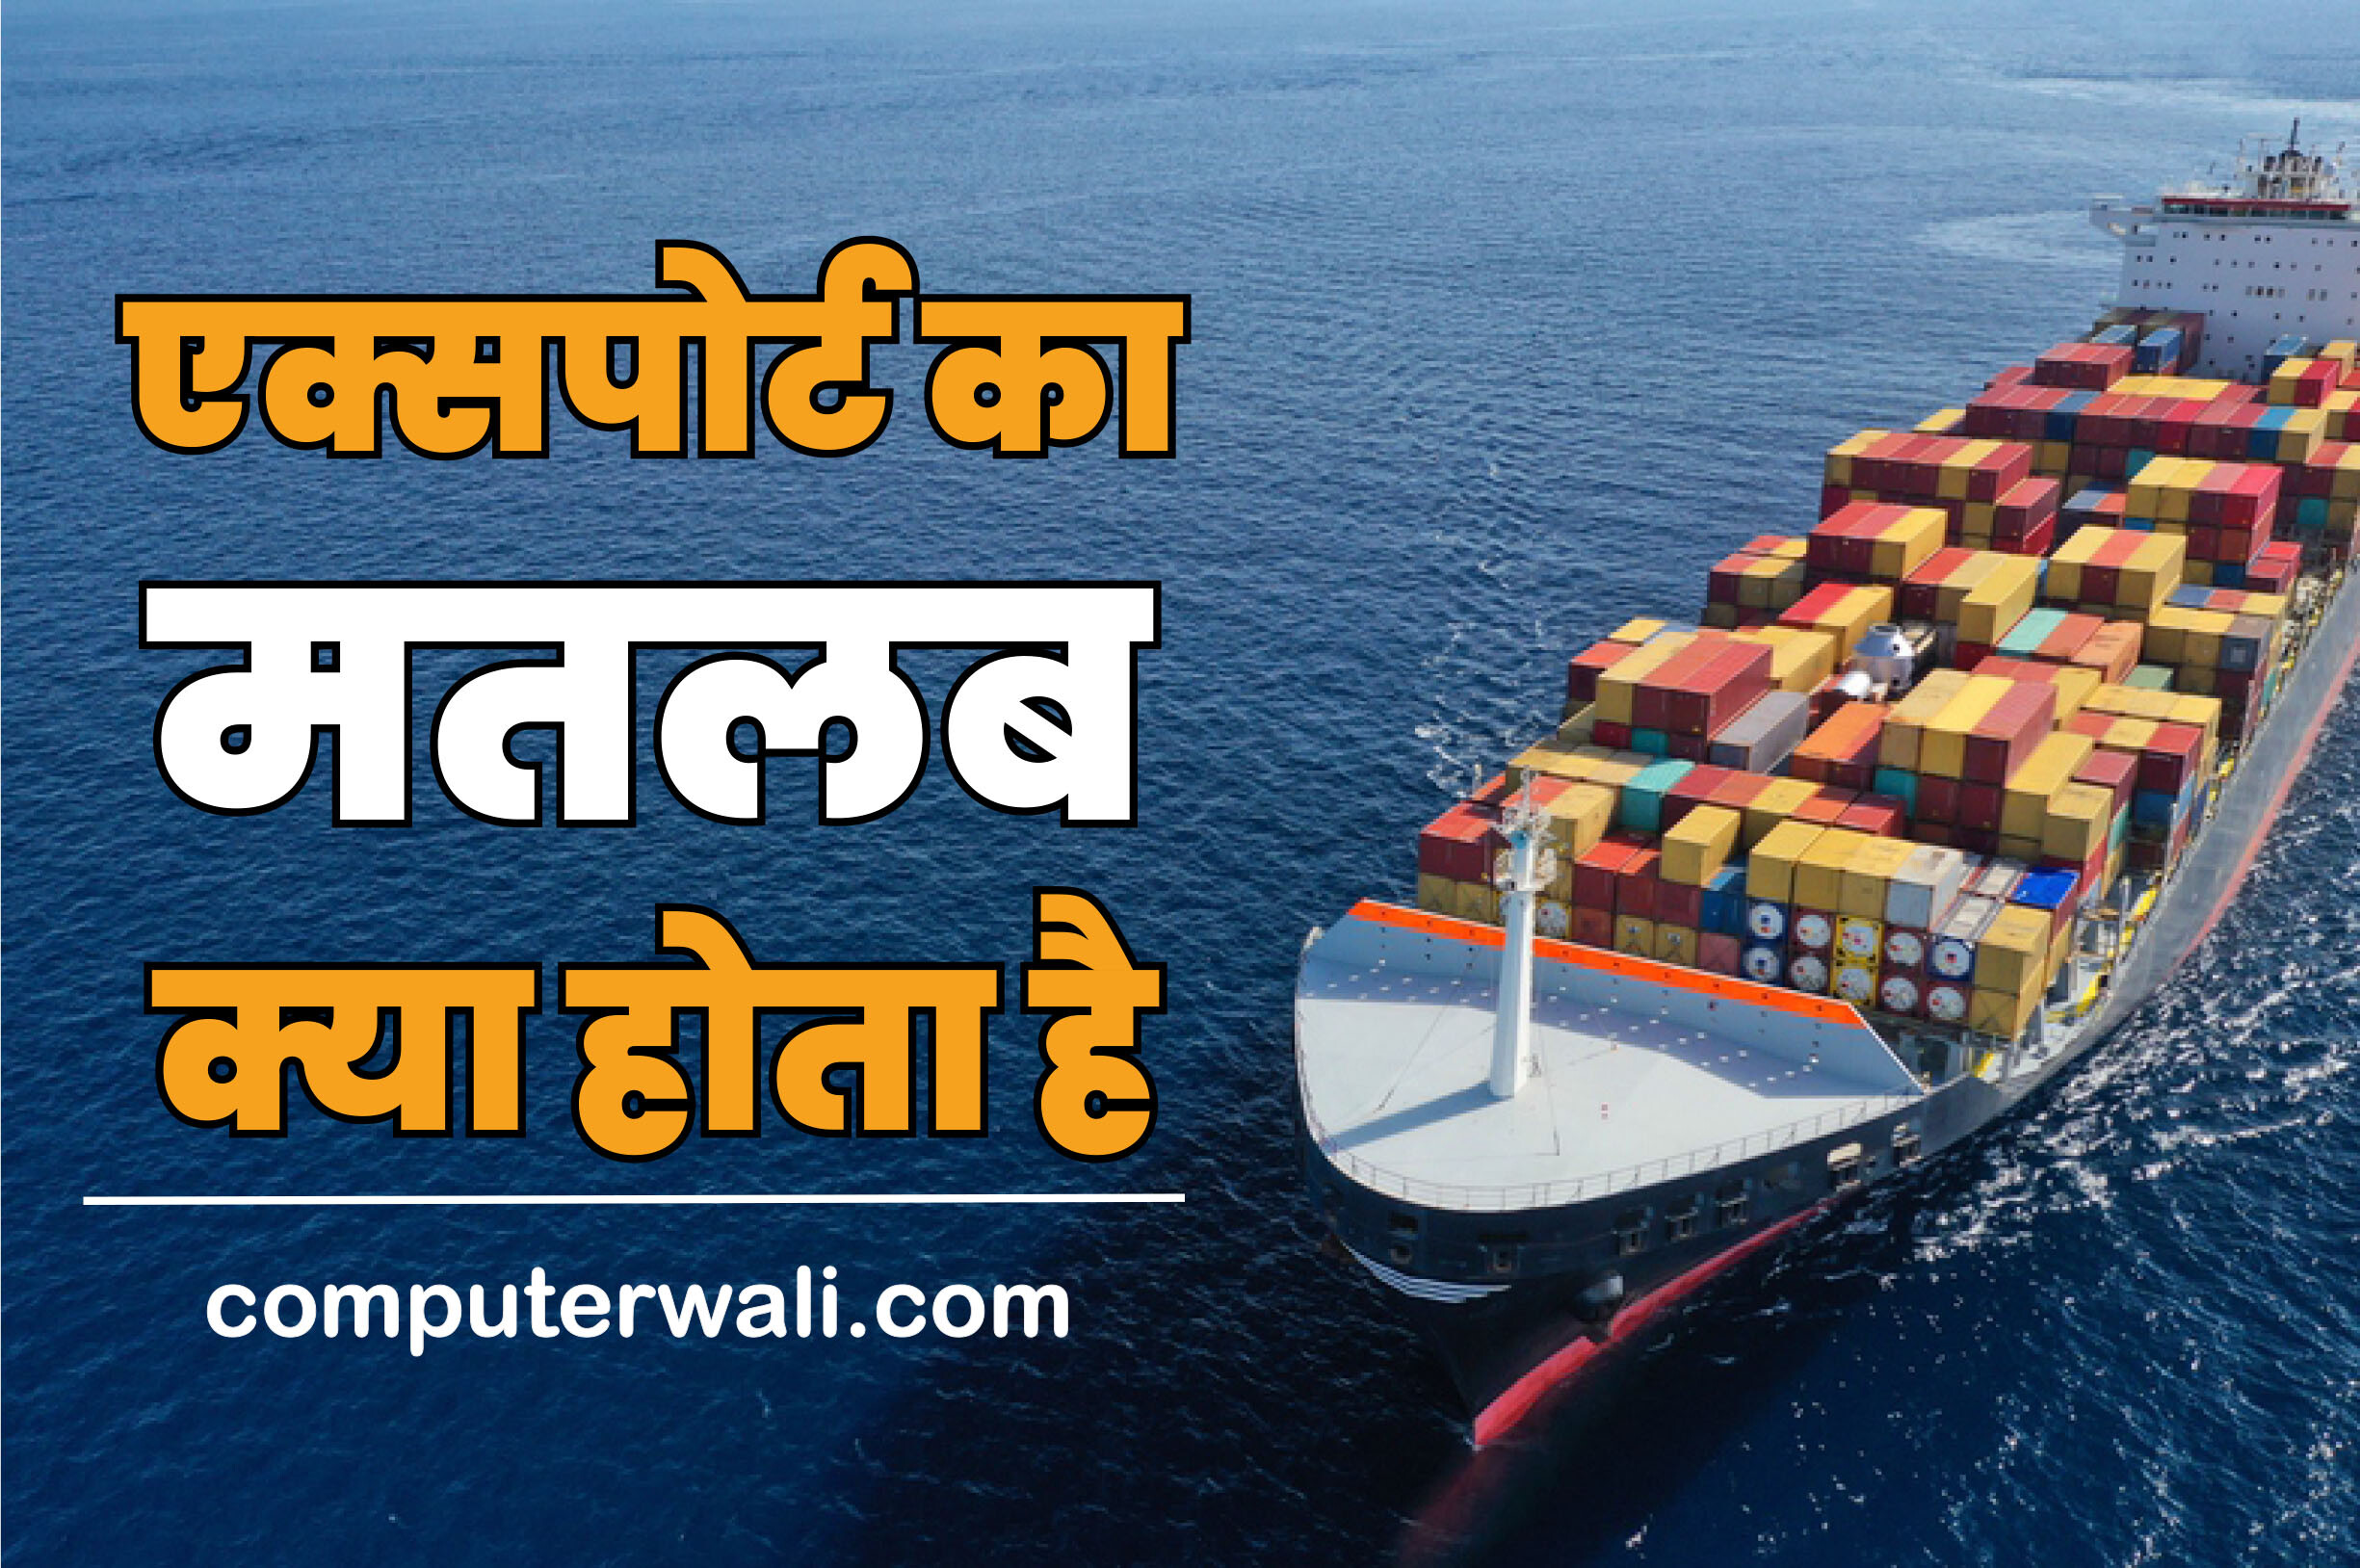 Export meaning in Hindi - Export ka hindi meaning kya hota hai